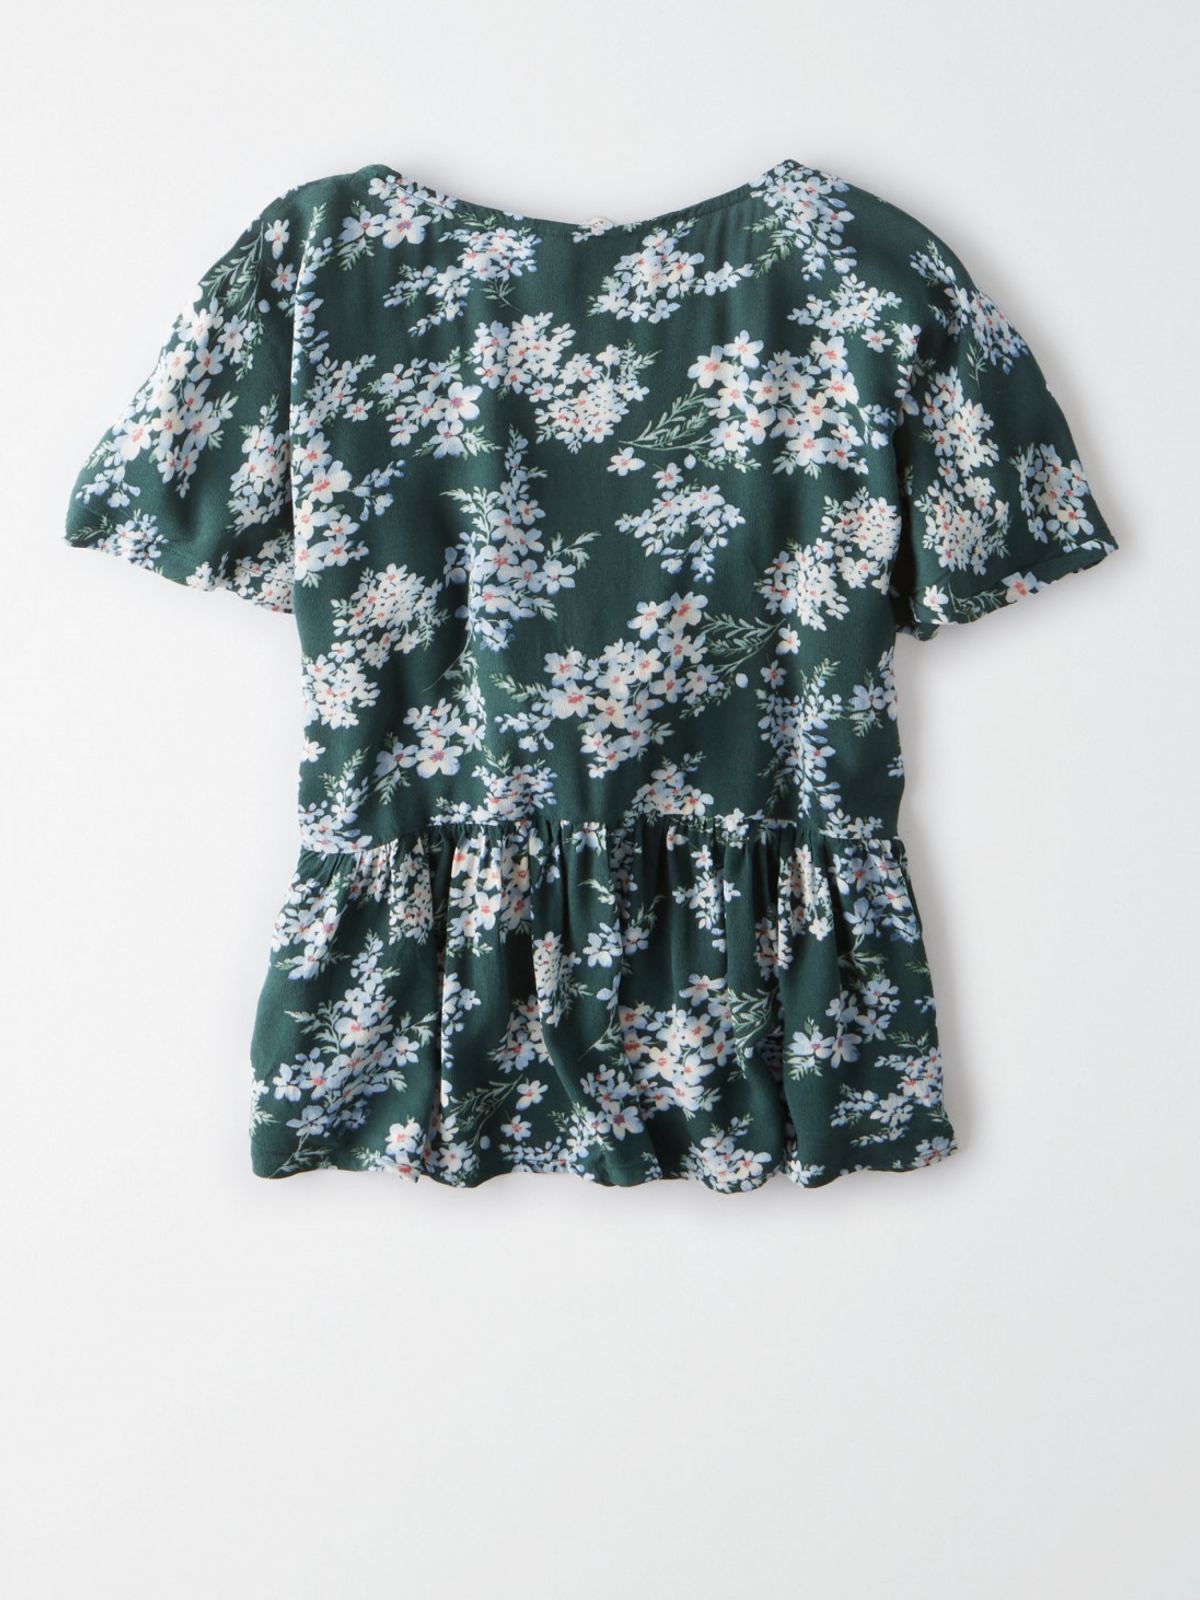  חולצת פפלום עם קשירה בהדפס פרחים / נשים של AMERICAN EAGLE